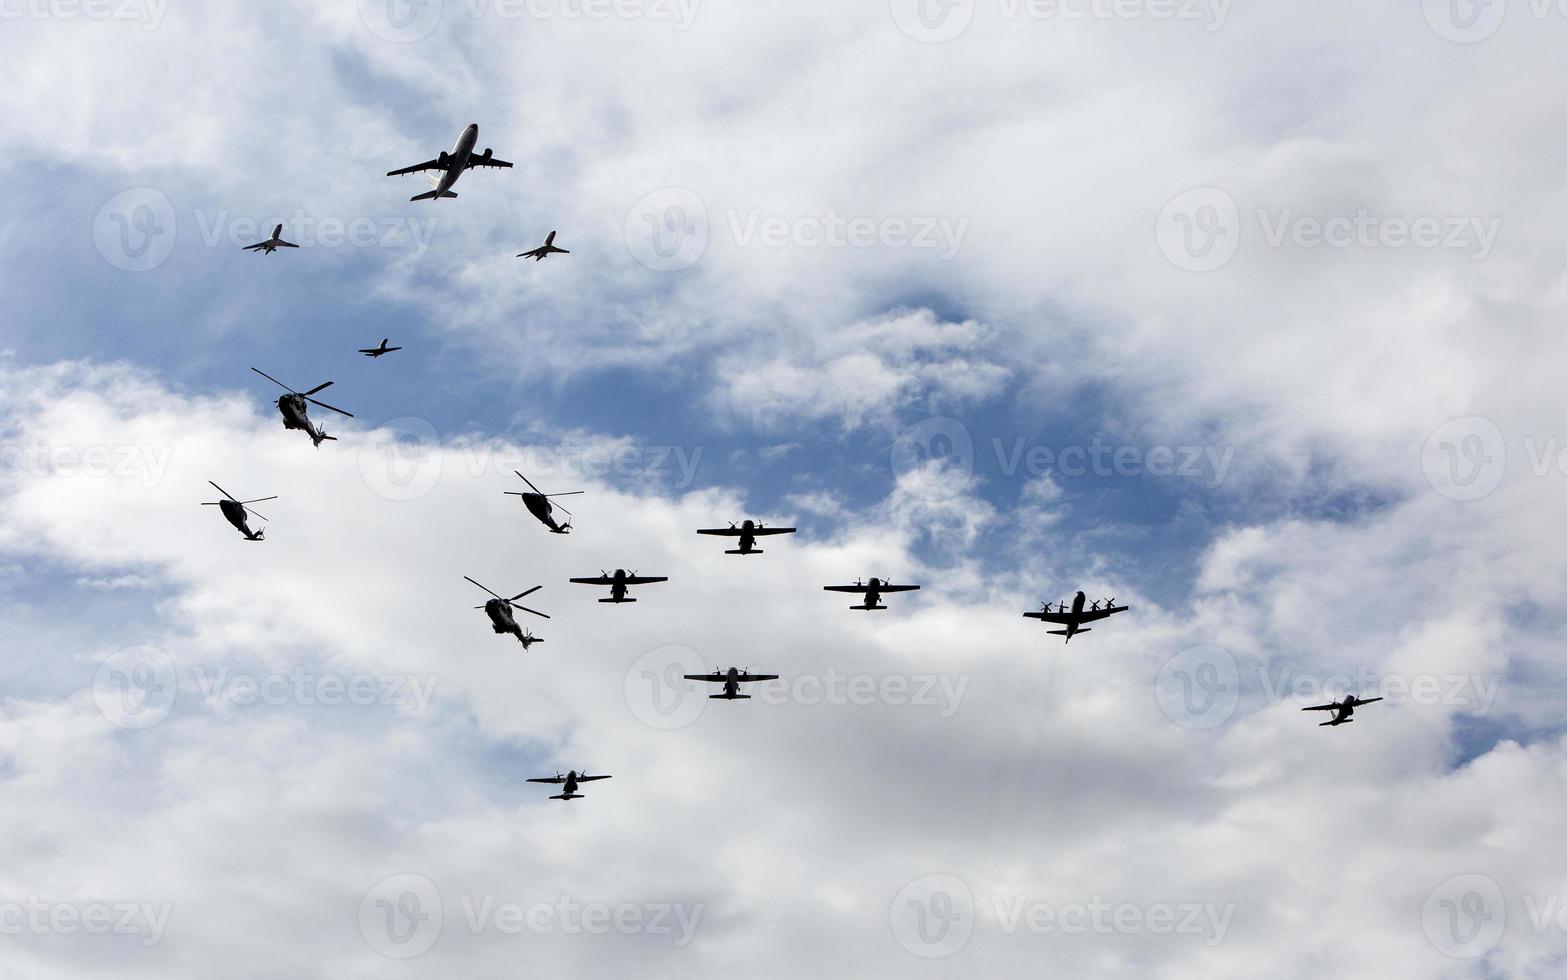 Exposición y desfile aéreo en el cielo de Madrid, España foto